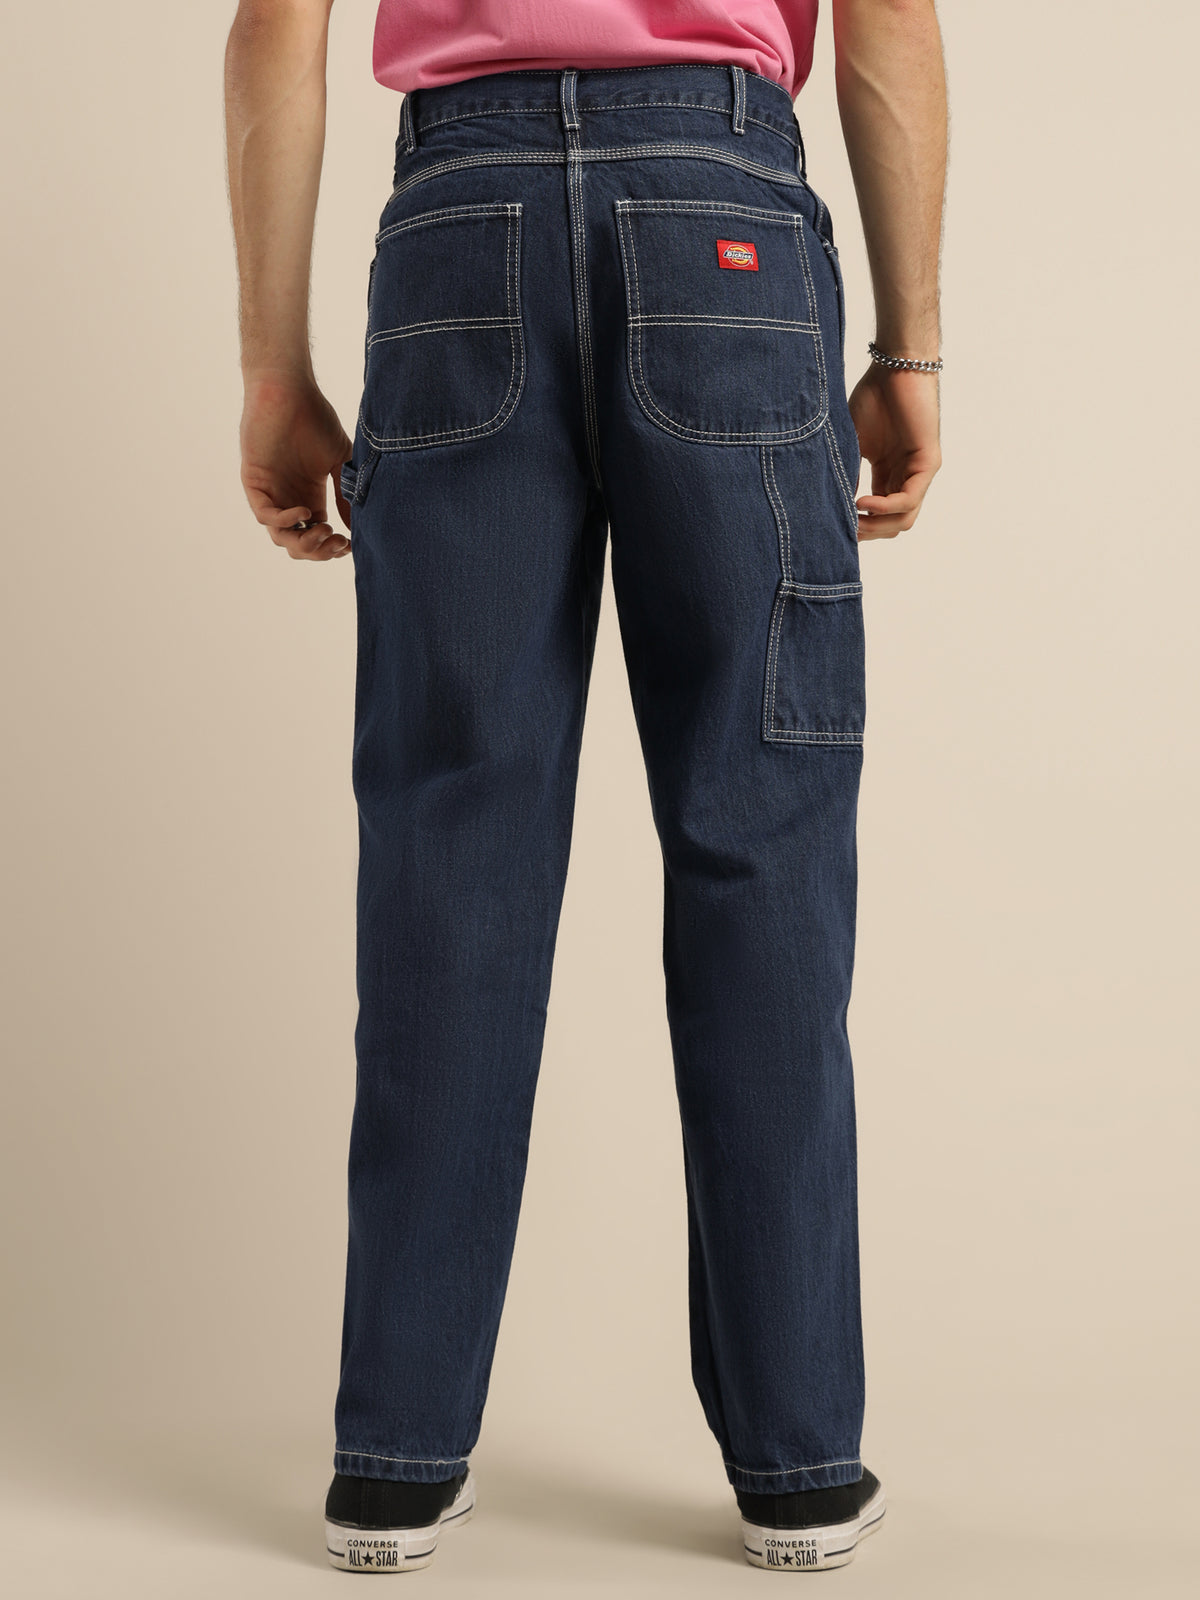 1994 Carpenter Denim Jeans in Rinsed Indigo